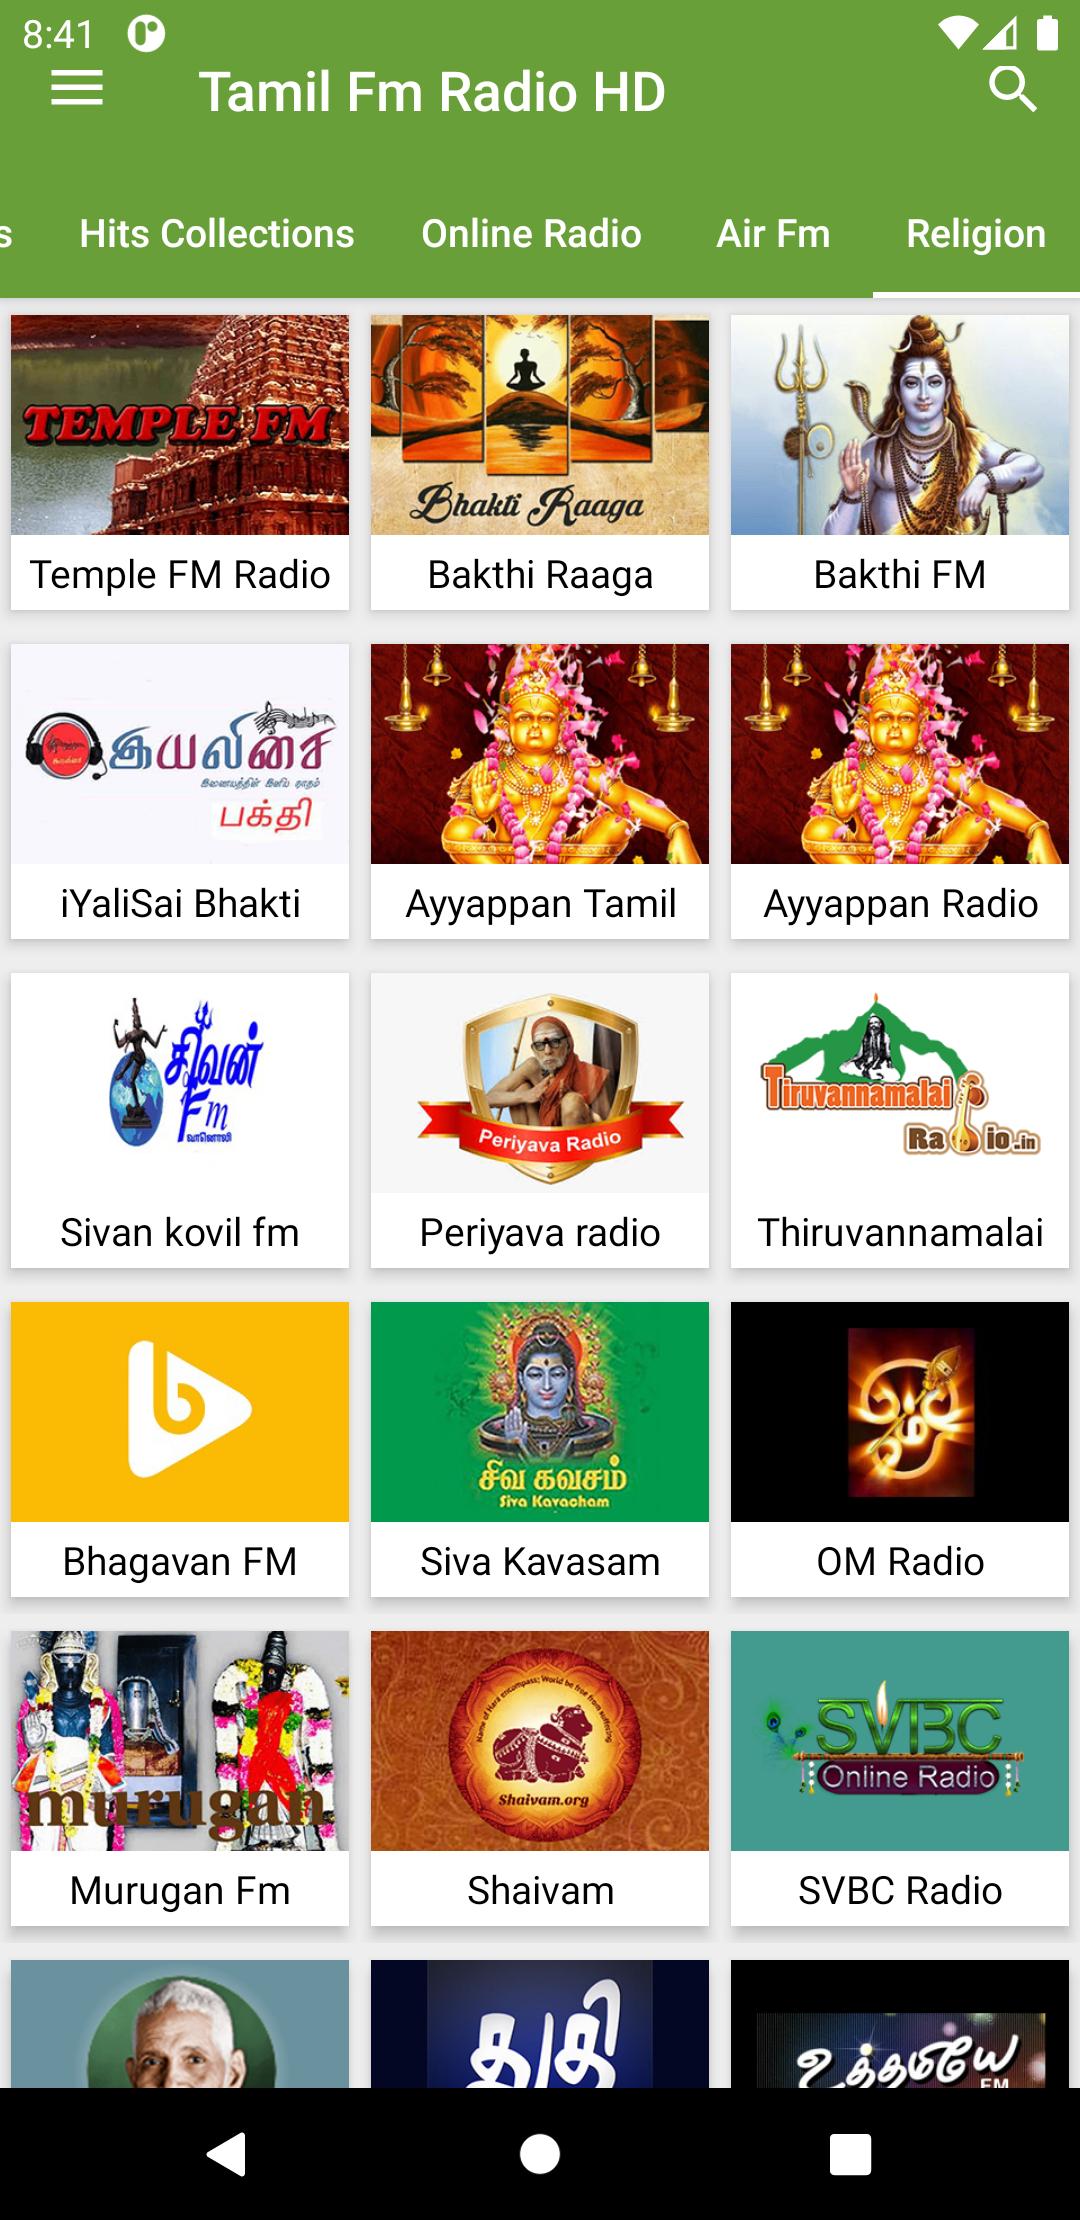 Tamil Fm Radio Hd Online tamil songs für Android - APK herunterladen